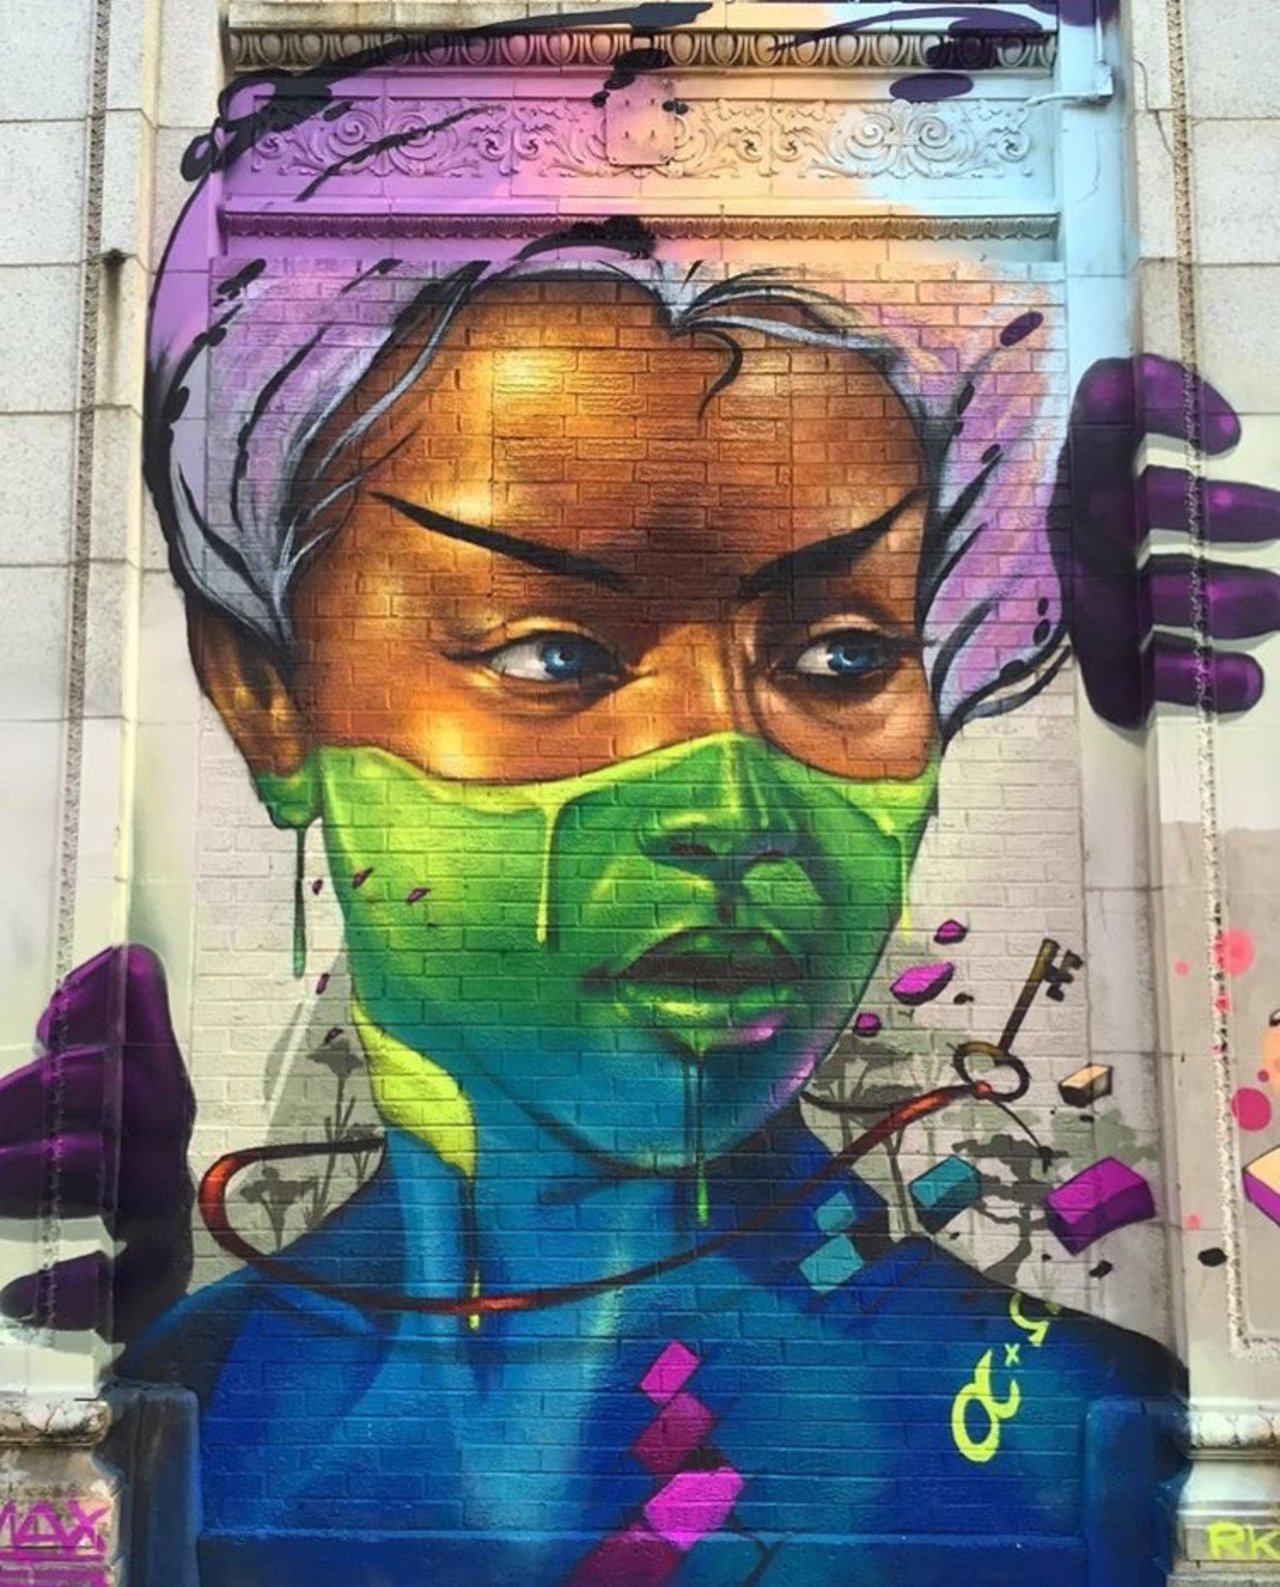 By Max Sansing in Chicago, USA 🇺🇸#art #mural #graffitti #streetart #USA #Chicago https://t.co/F9G6rvdCyR